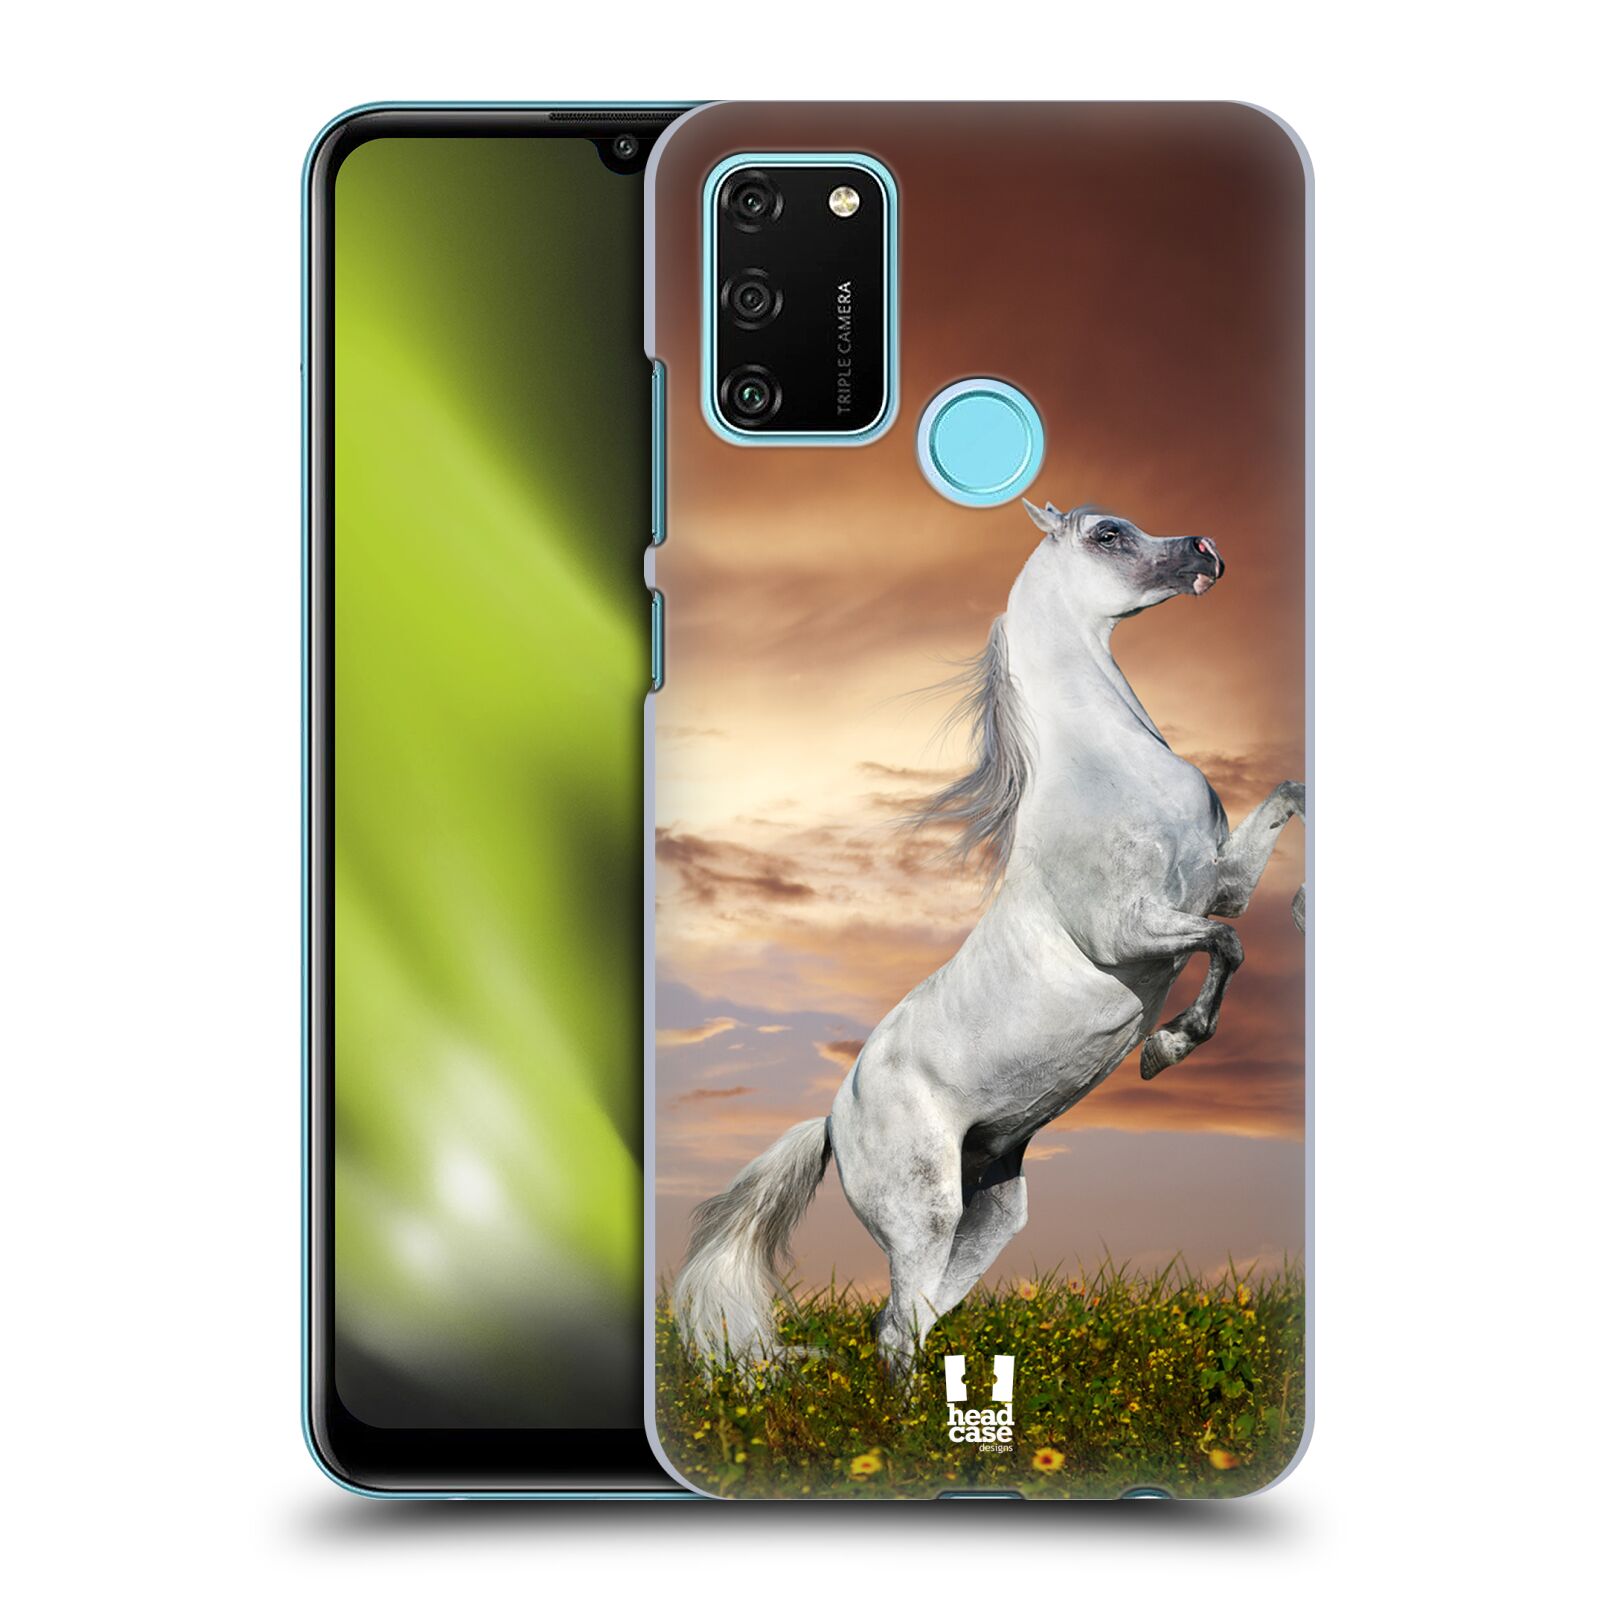 Zadní obal pro mobil Honor 9A - HEAD CASE - Svět zvířat divoký kůň